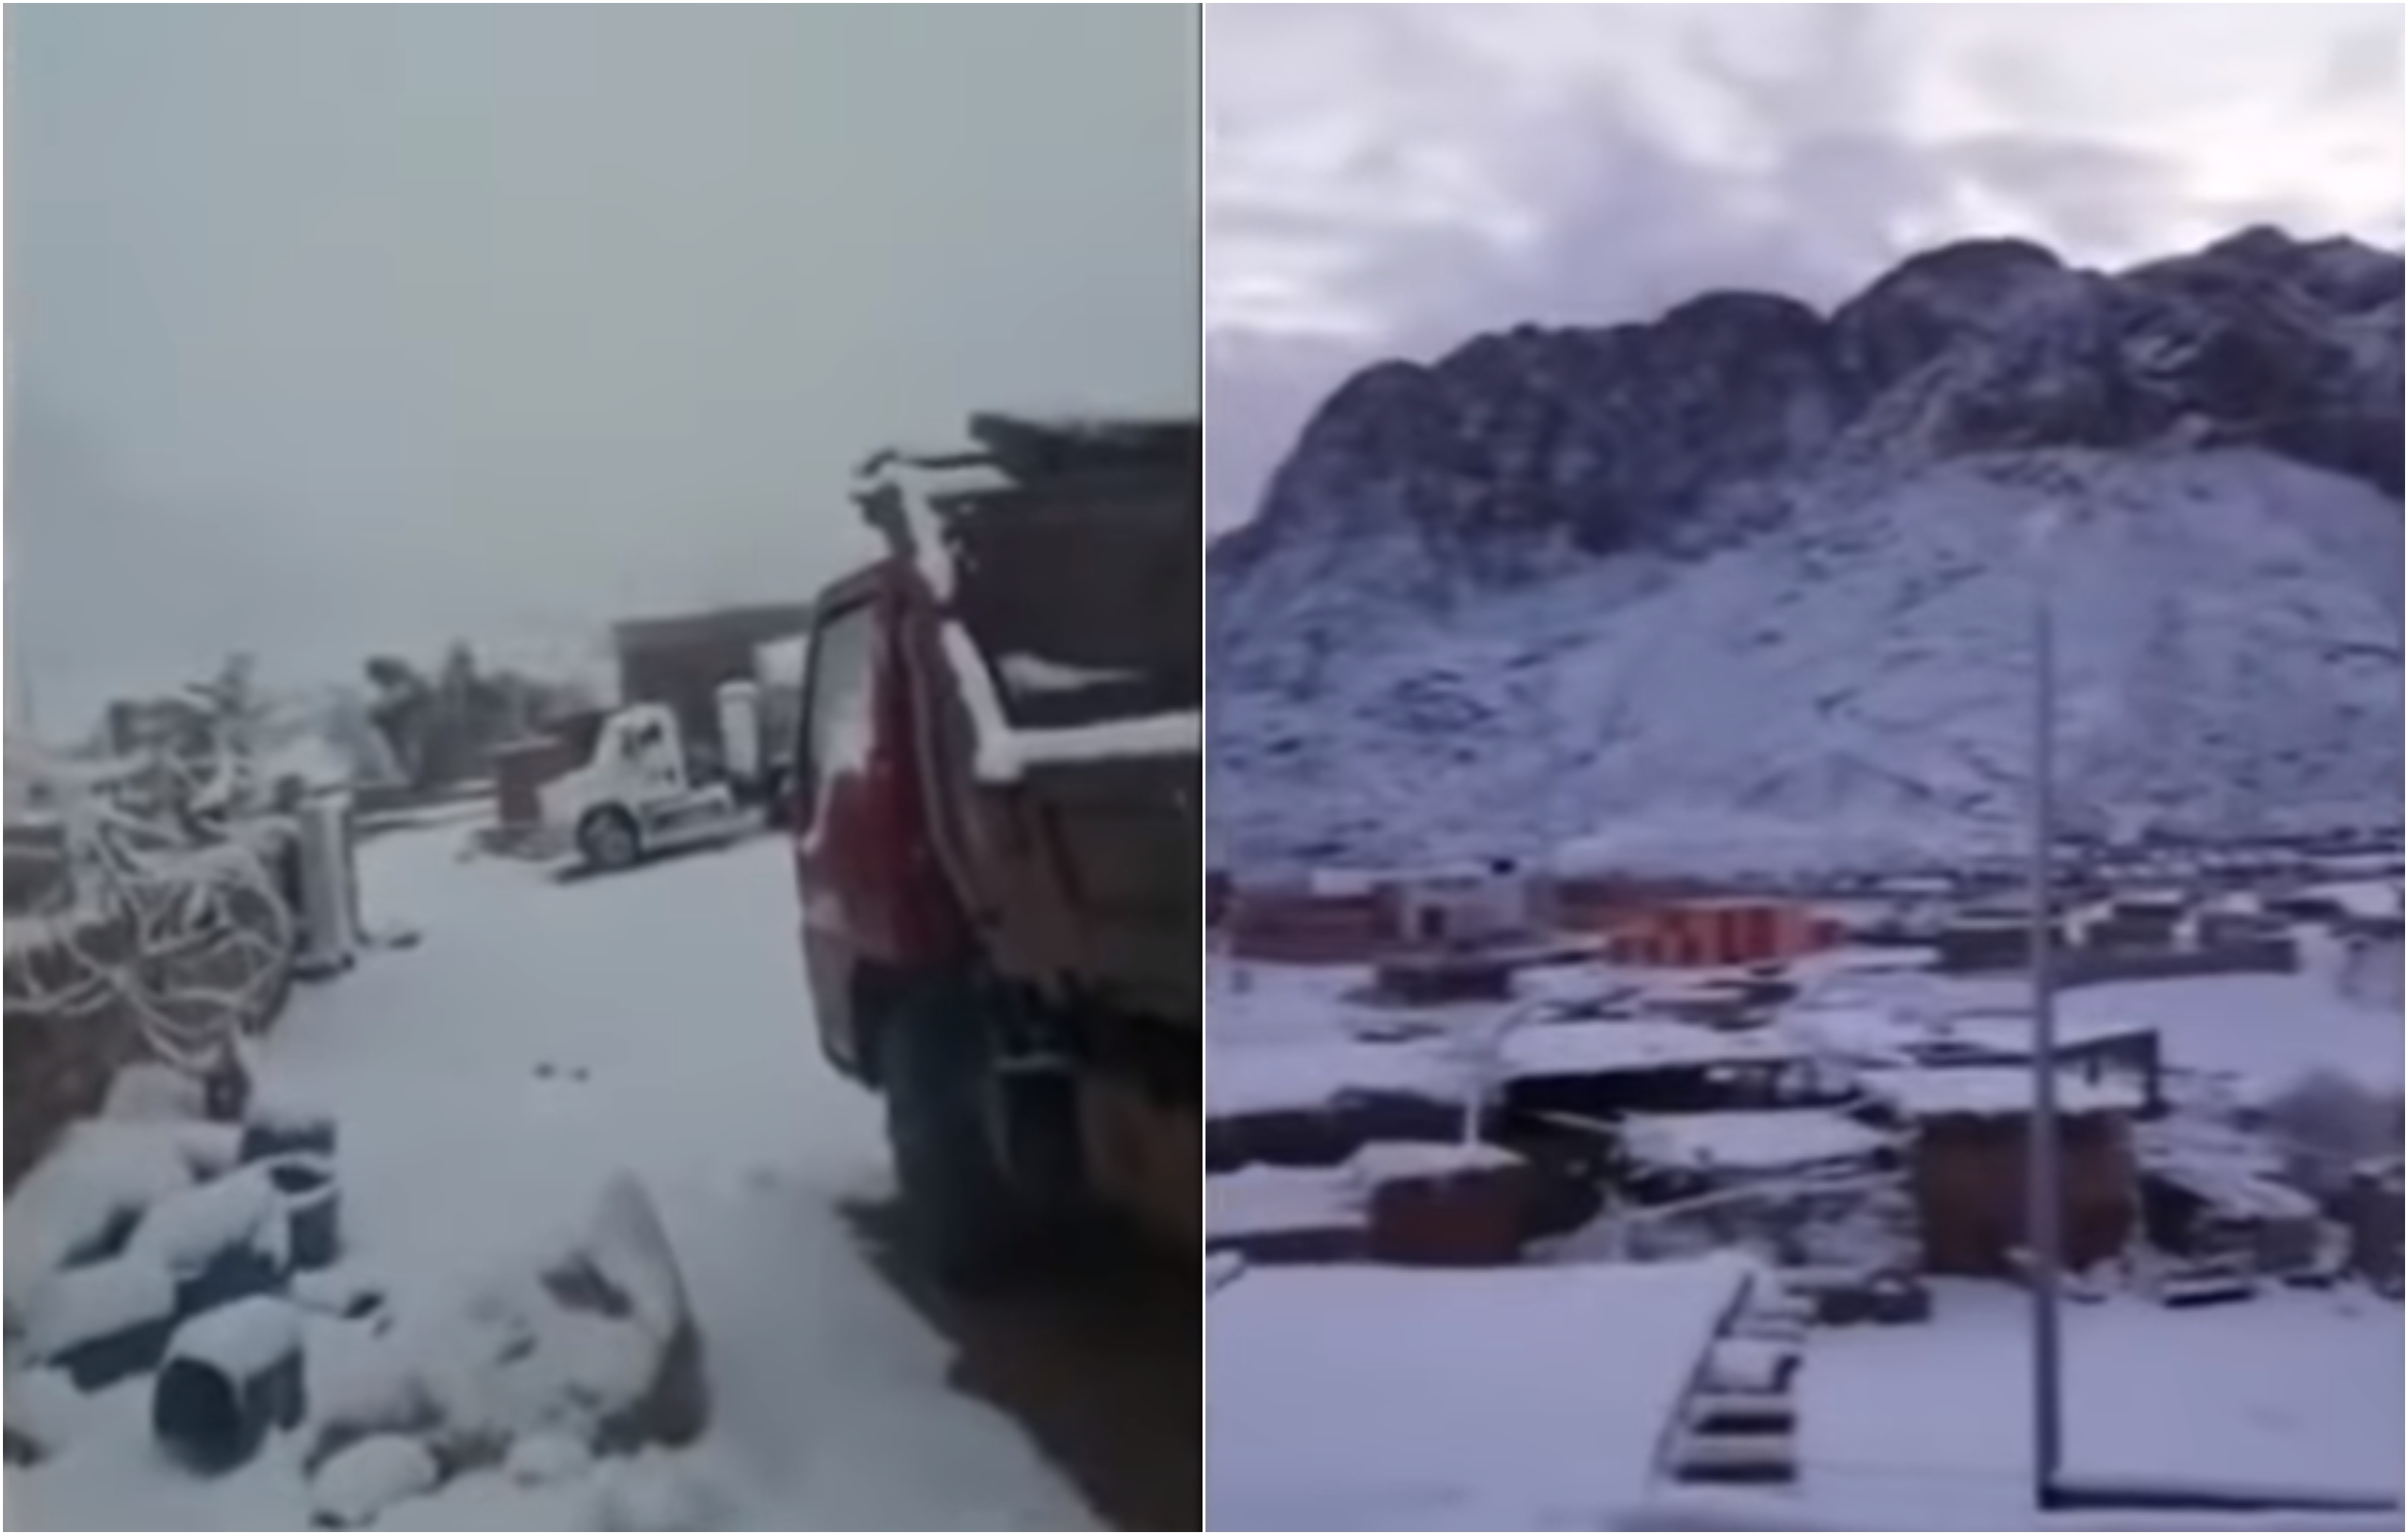 شاهد : الثلج يغطي سيناء المصرية في مشهد نادر الحدوث!